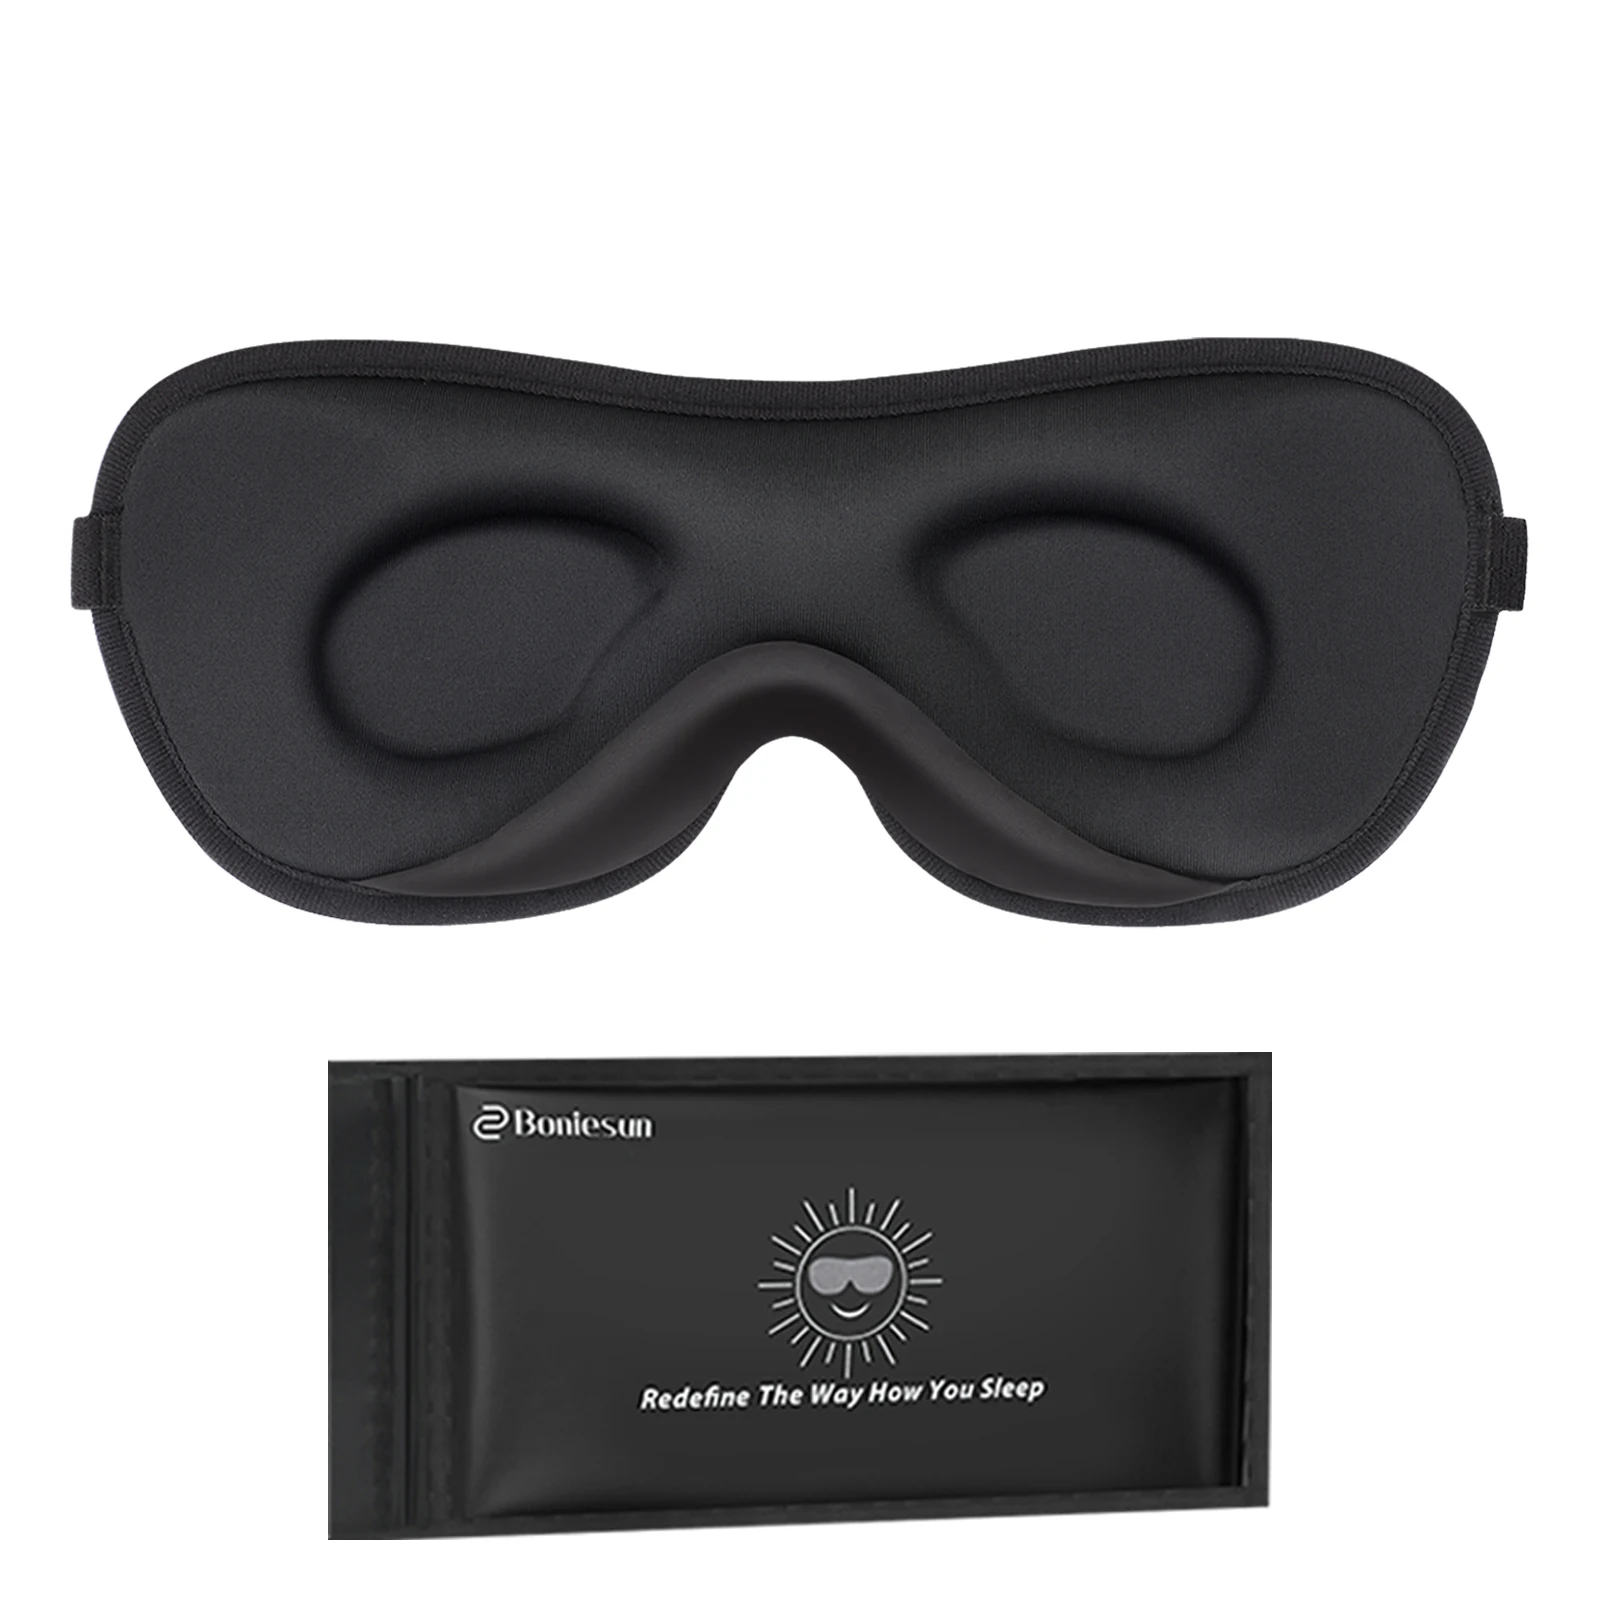 

Boniesun 2023 Luxury Slim Eye Mask for Sleeping Blackout Sleep Mask for Women Men, Night Sleeping Mask for Side Sleepers